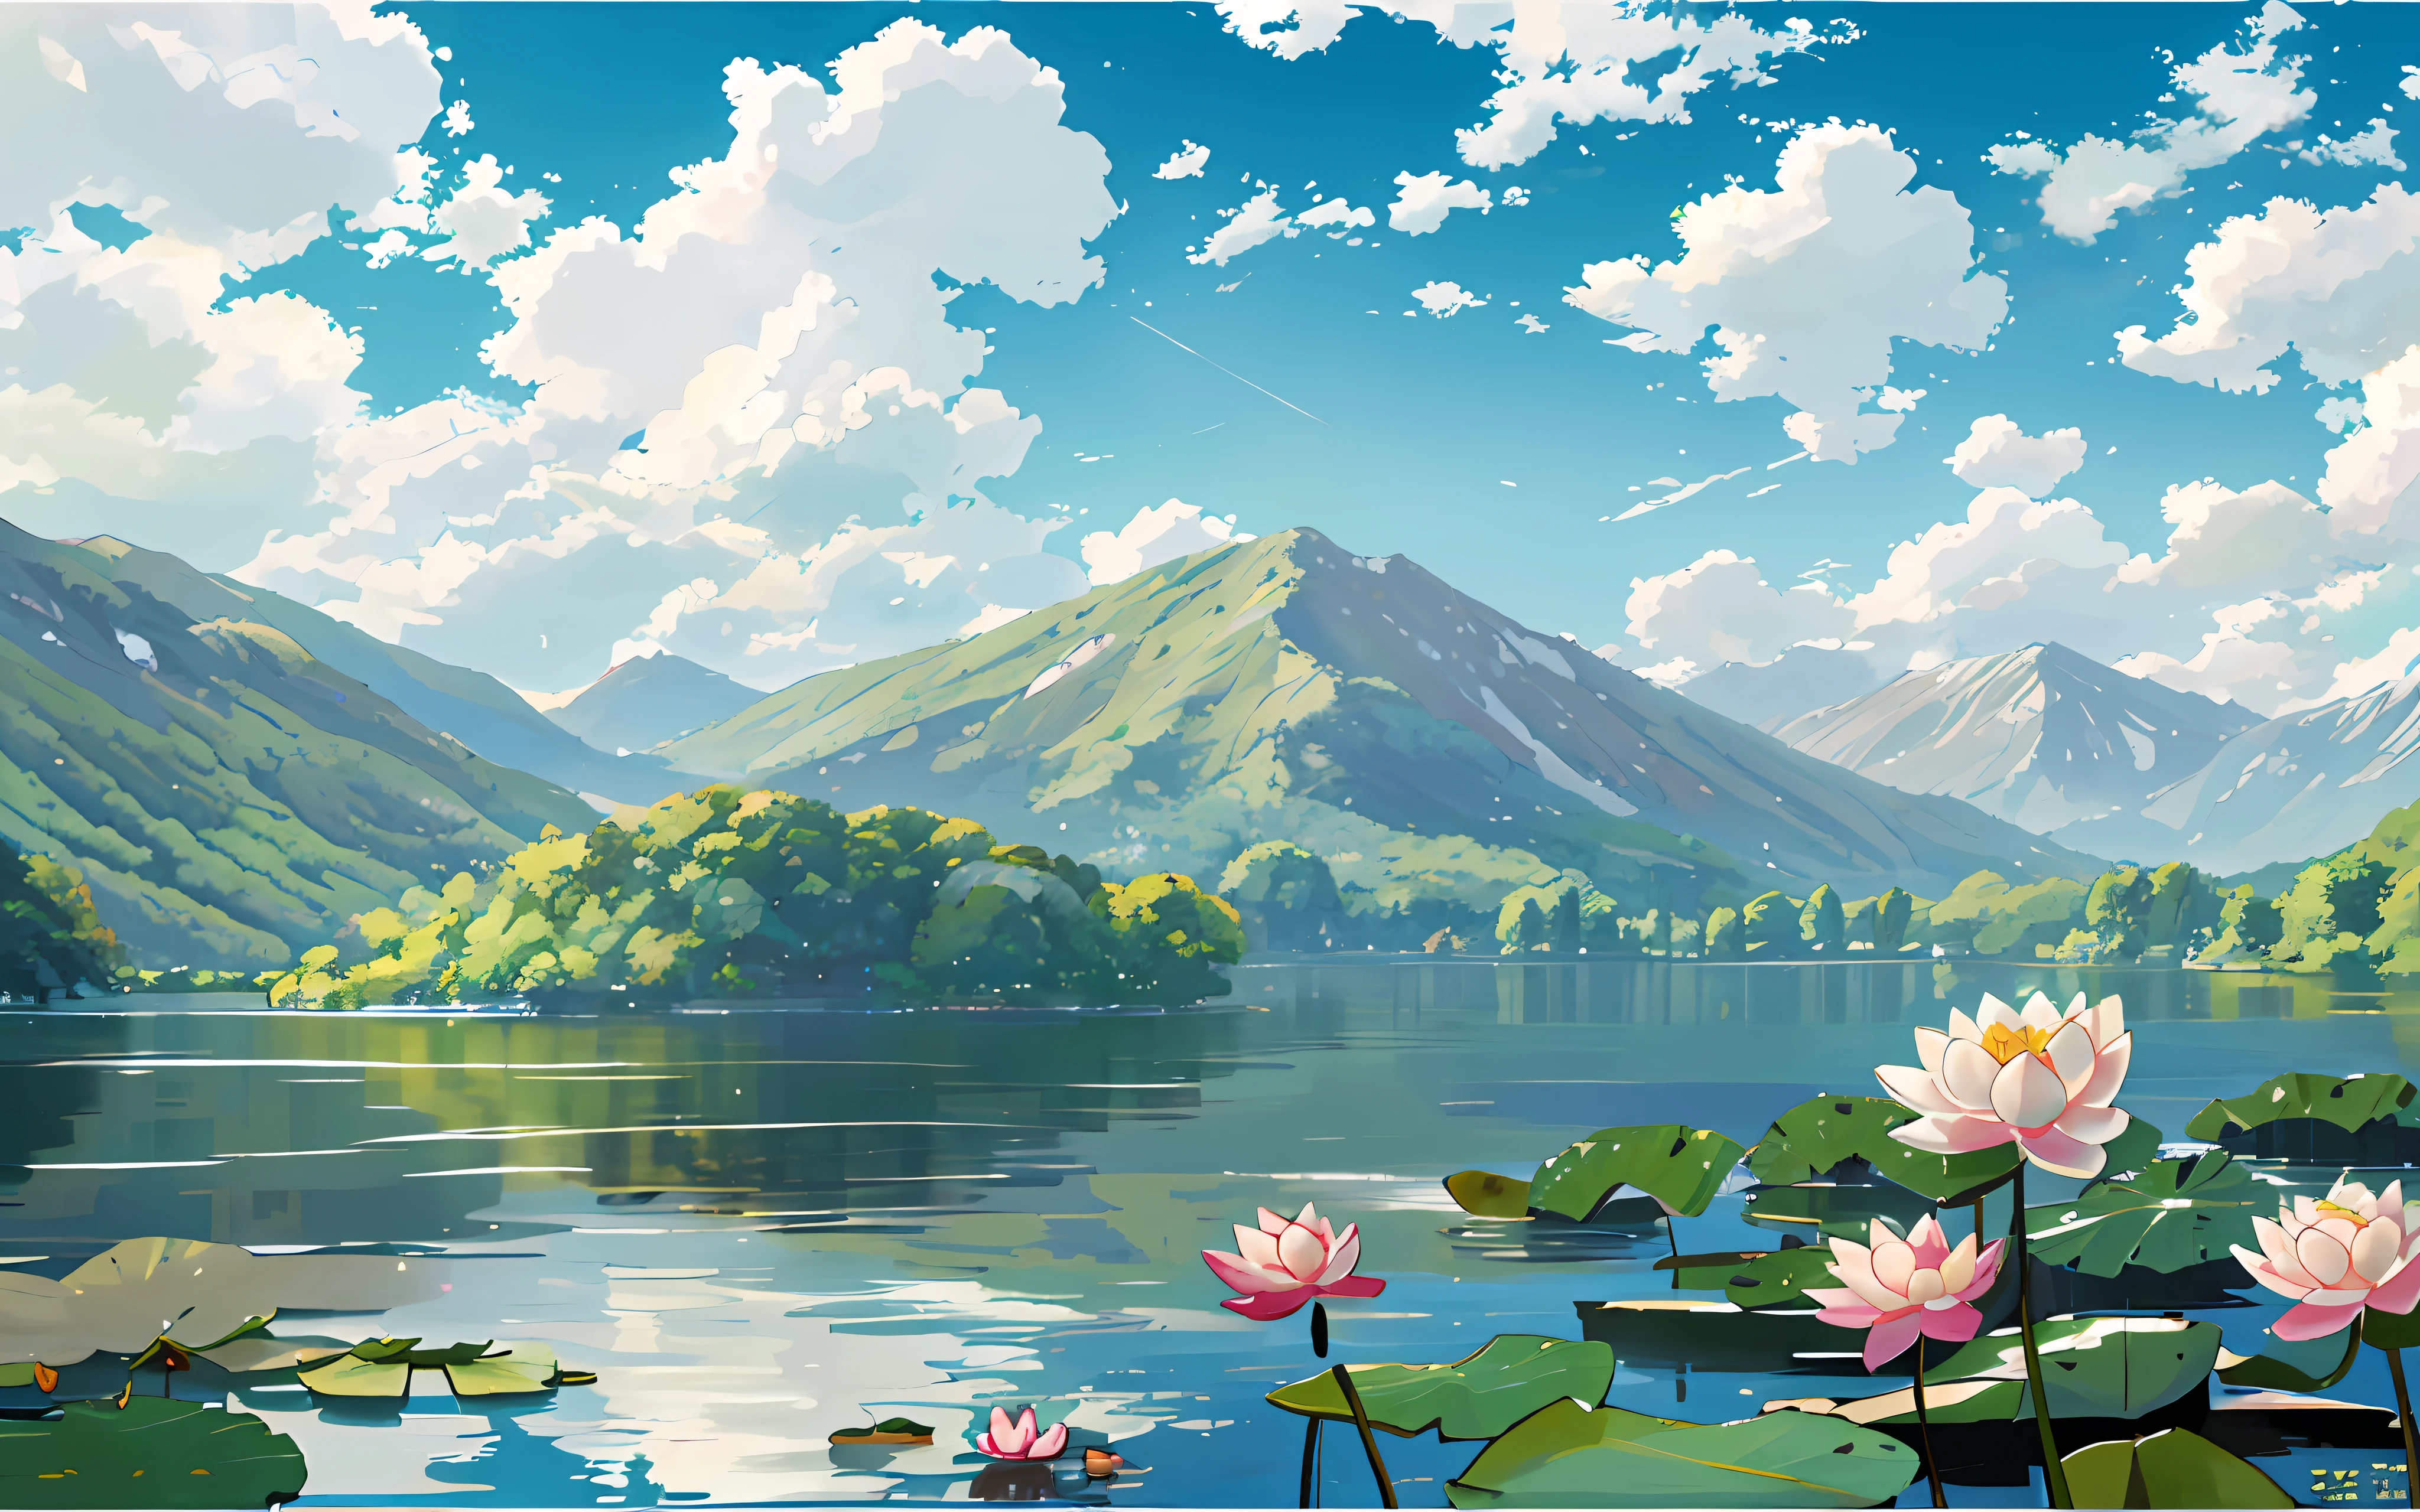 앞쪽에는 호수가 있다, 이있다 [하얀색] 호수의 수련과 연잎, 청산, blue sky and 하얀색 clouds, 지플리 스타일, 2차원, 셀룰로이드, 삽화, 자연 경관, 바람, 여름, 밝은 톤, 햇빛